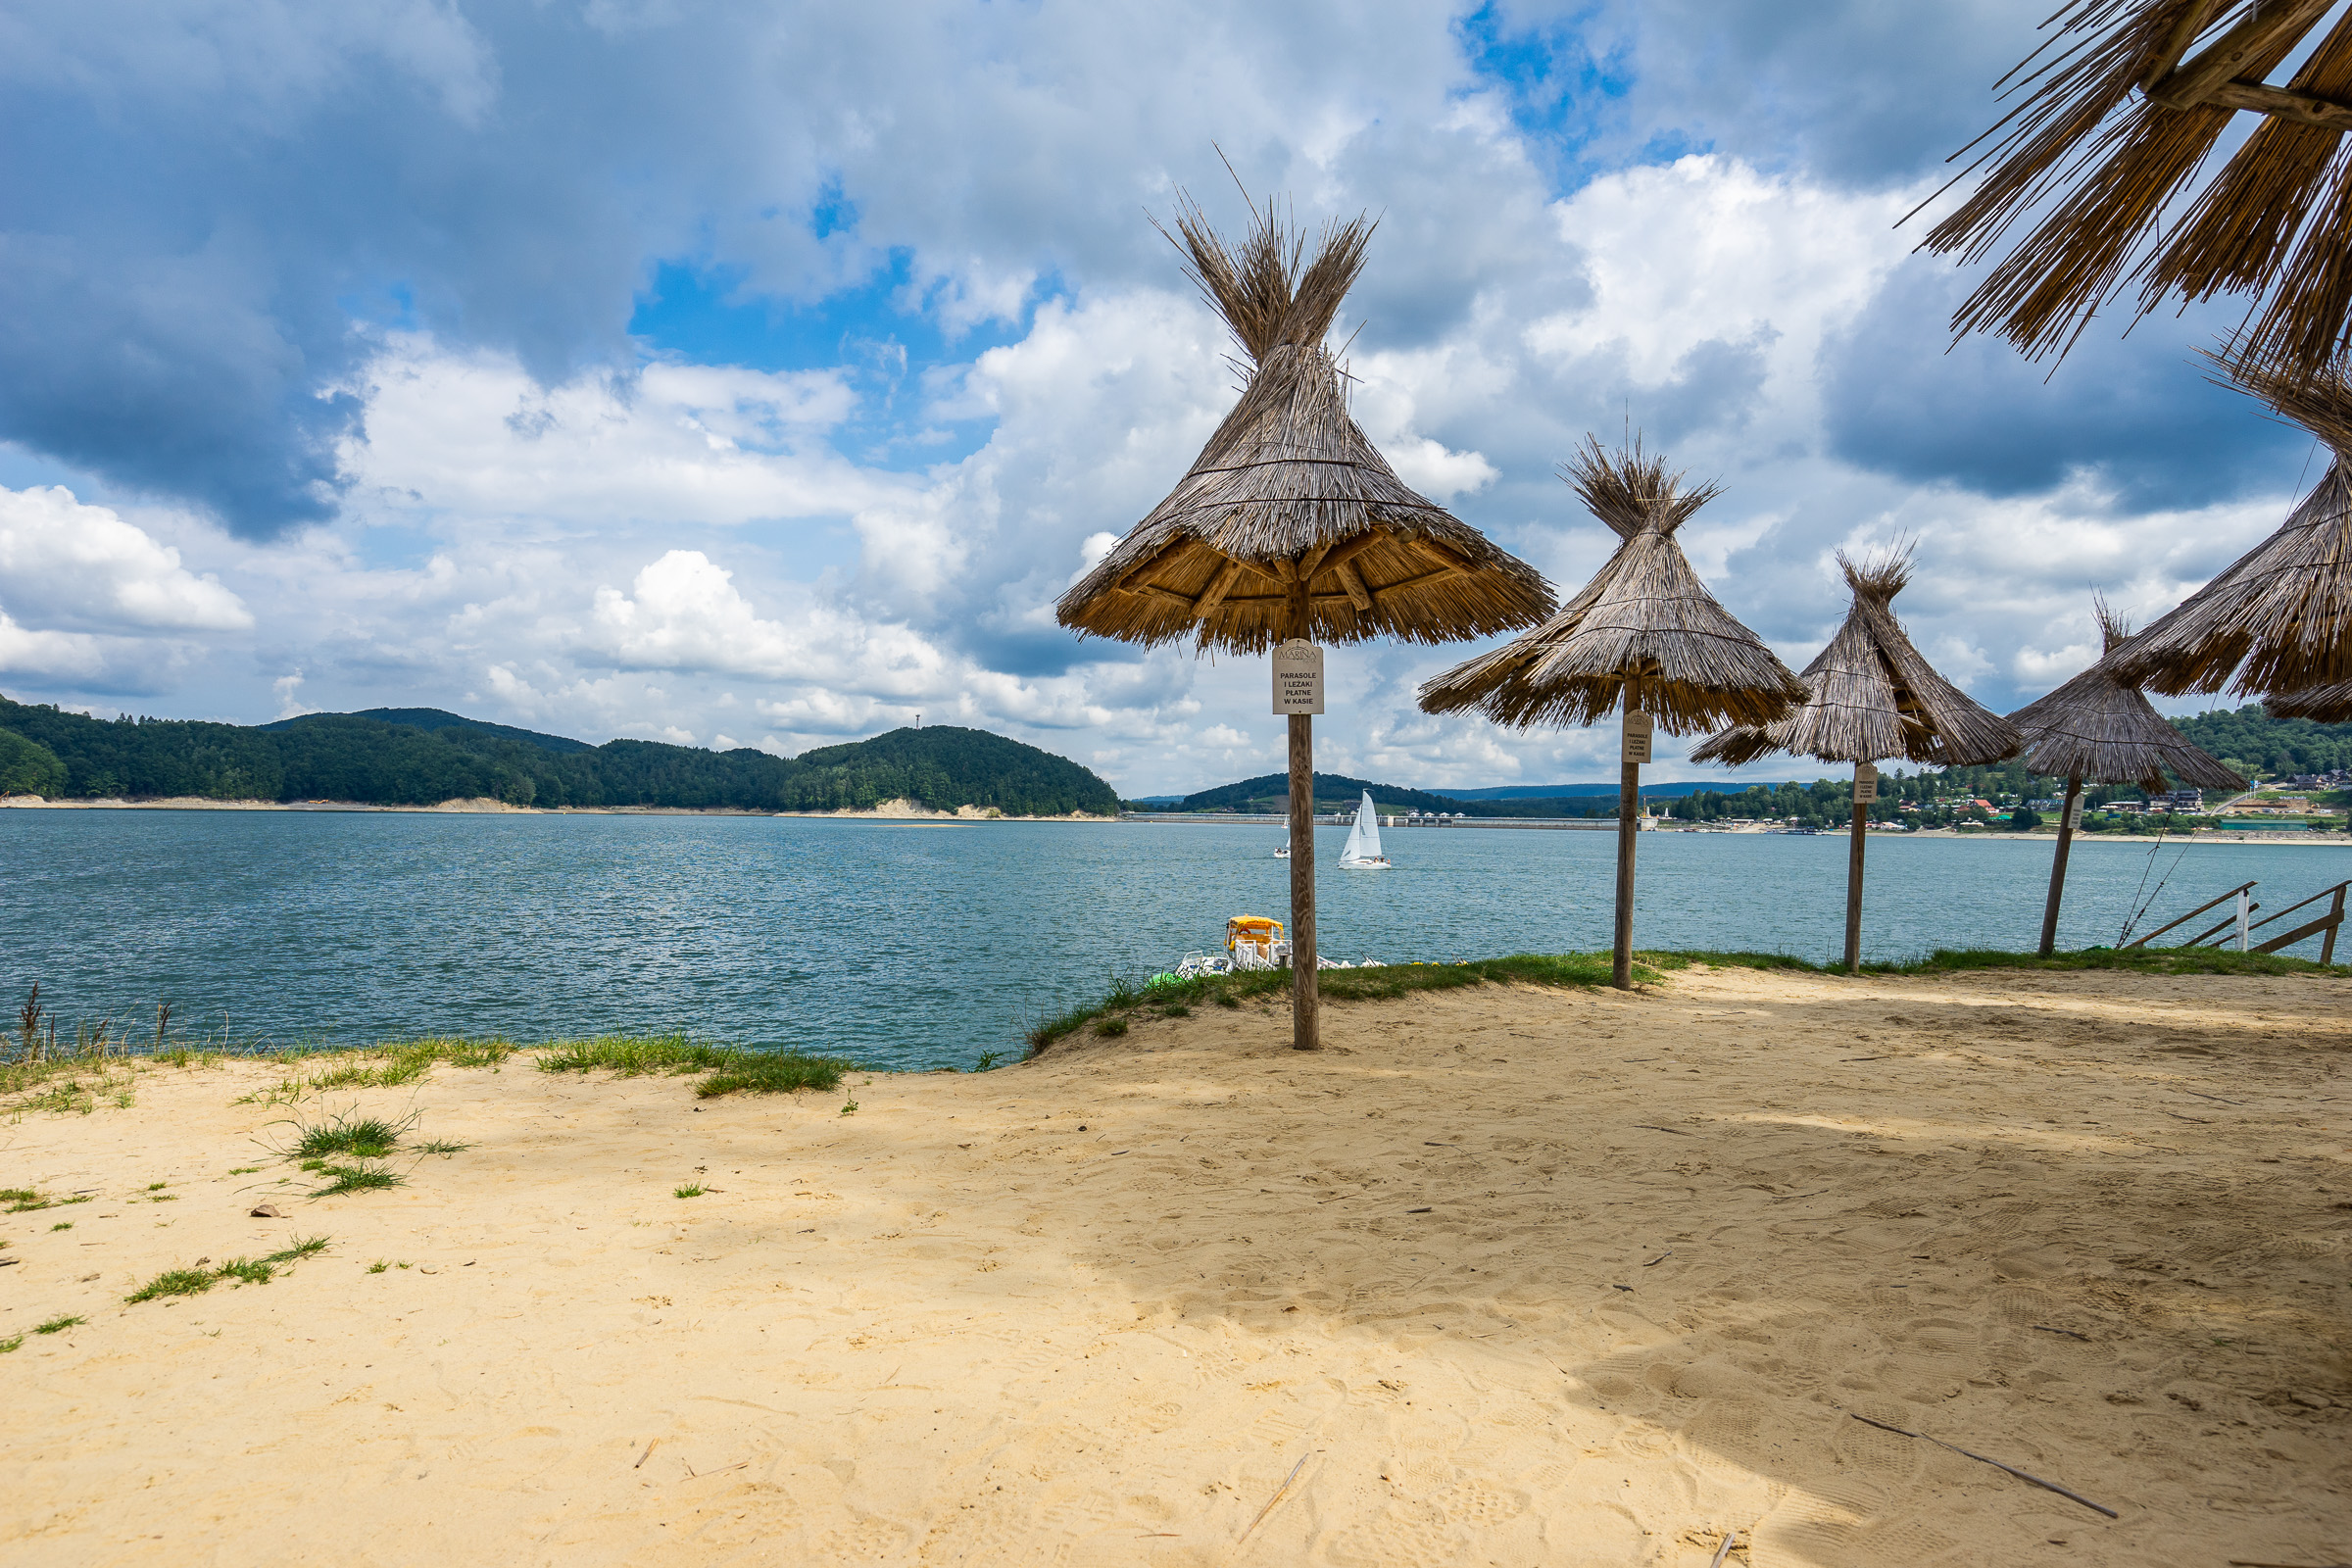 Piaszczysta plaża nad jeziorem. Na plaży ustawione drewniane parasole. W tle wzgórza porośnięte drzewami i betonowa zapora. Na jeziorze kilka białych żaglówek.